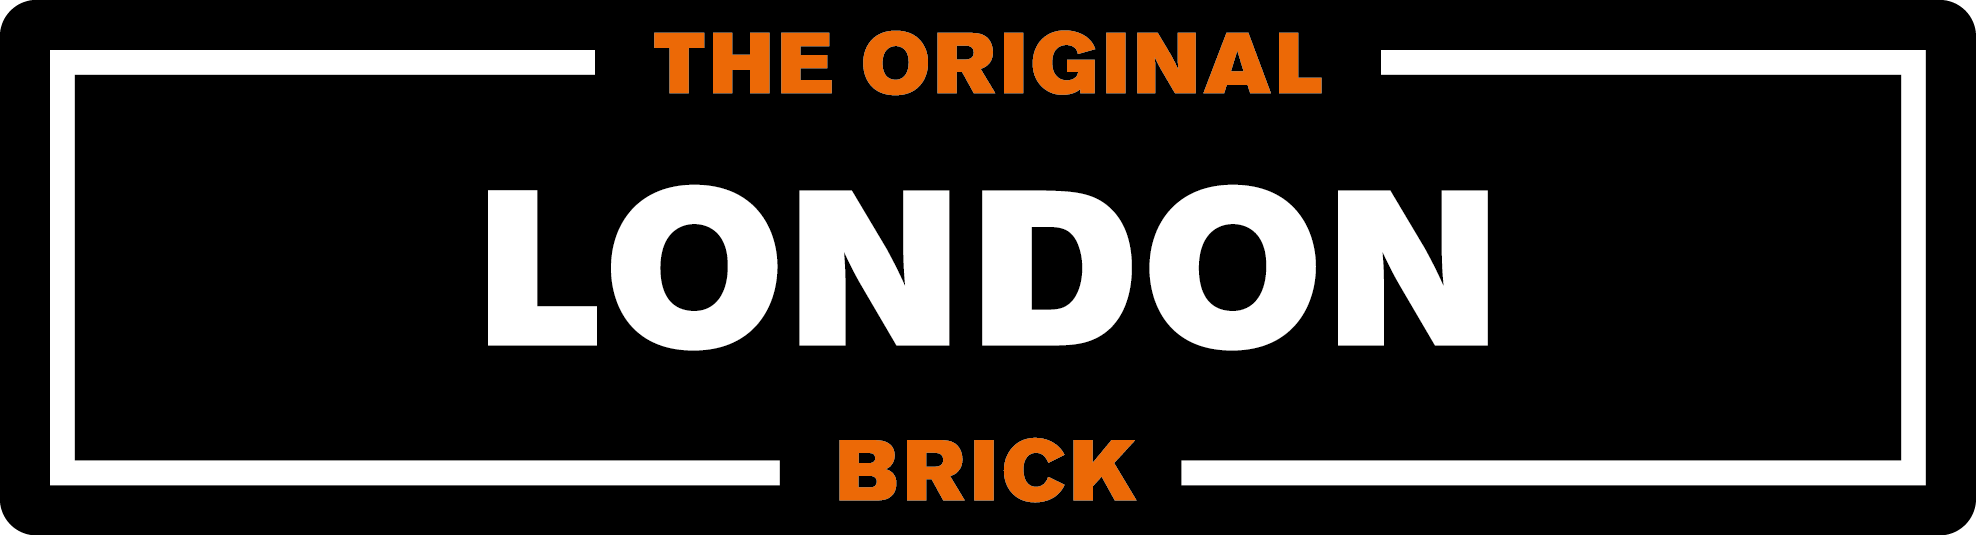 Brick Company Logo - London Brick